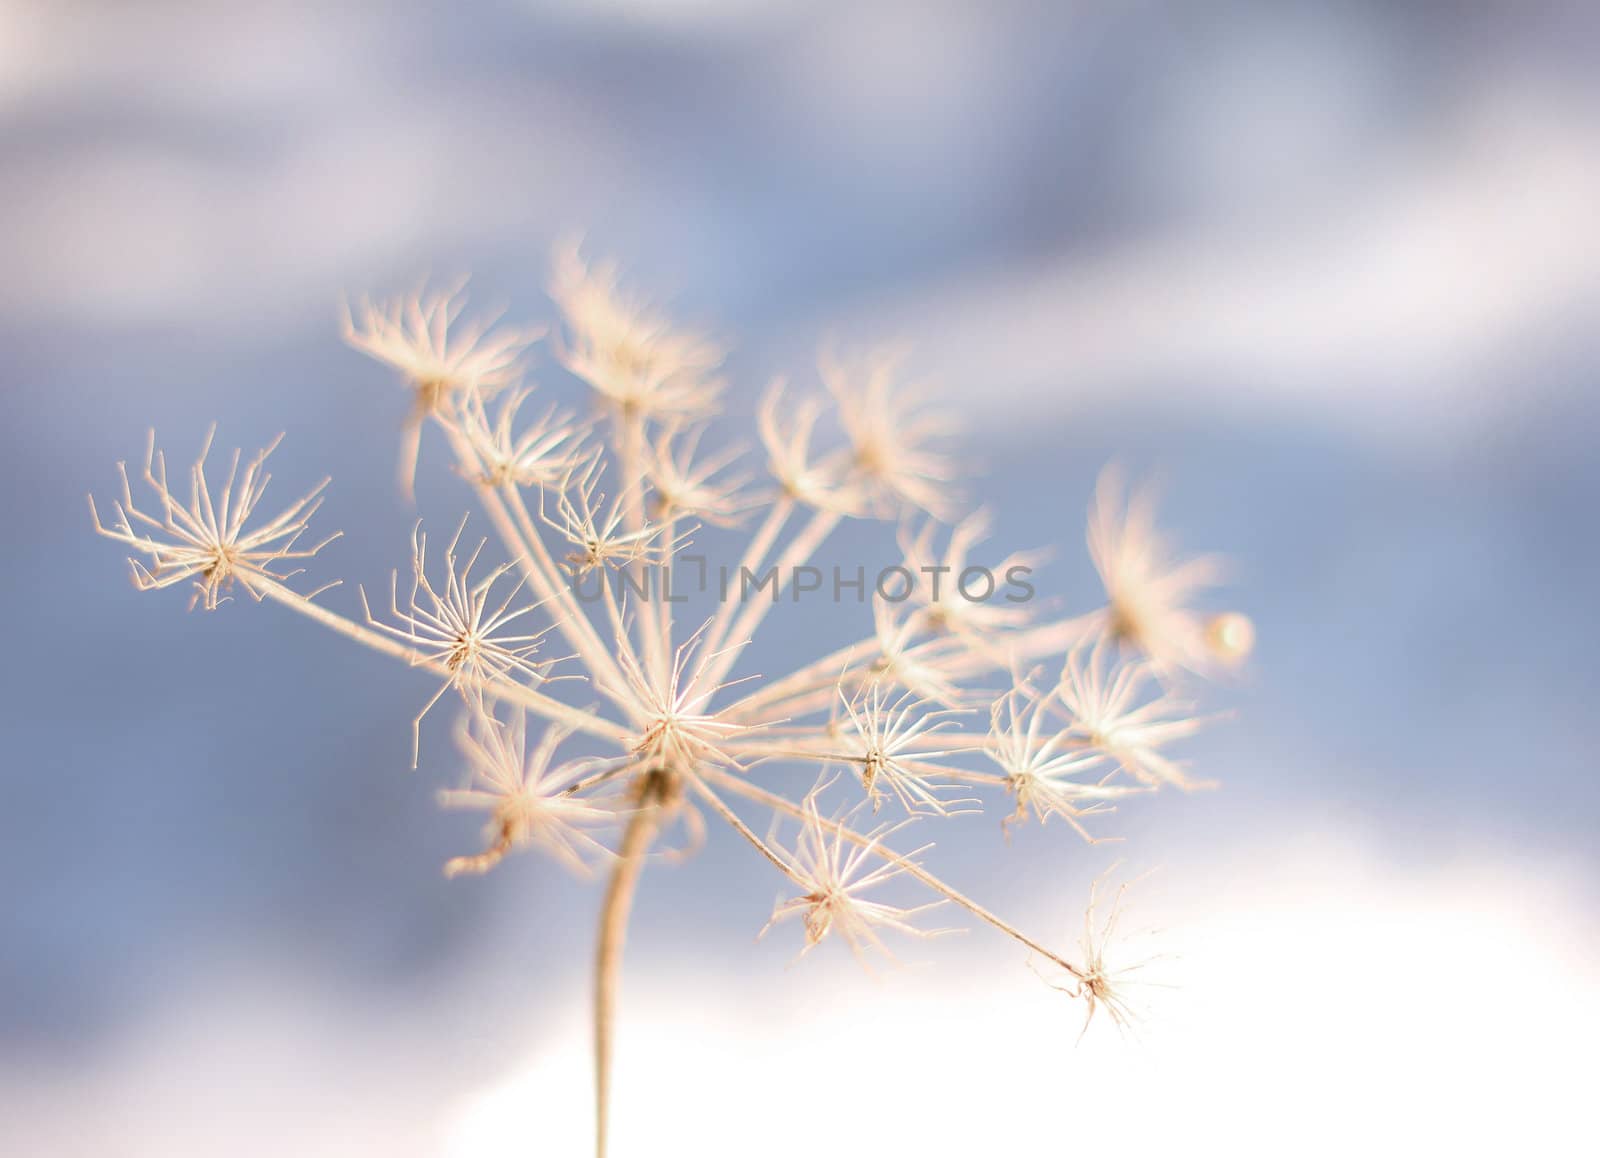 Frozen flower in winter coldness by anterovium